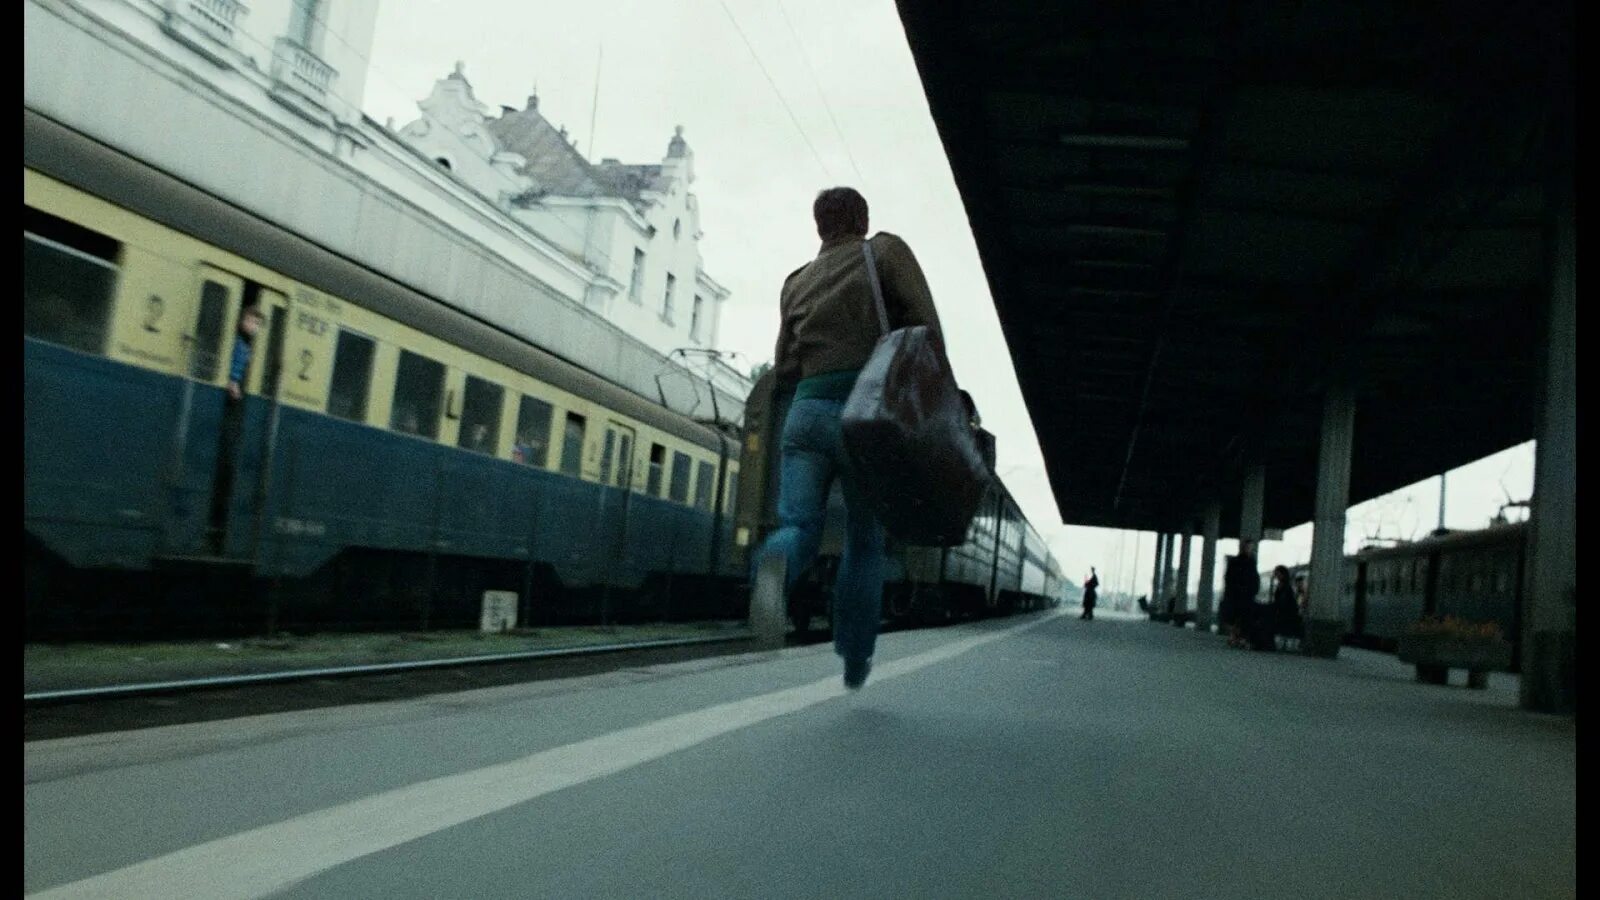 Уехать убежать. Опоздал на поезд. Человек бежит за поездом. Последний вагон. Человек опаздывает на поезд.